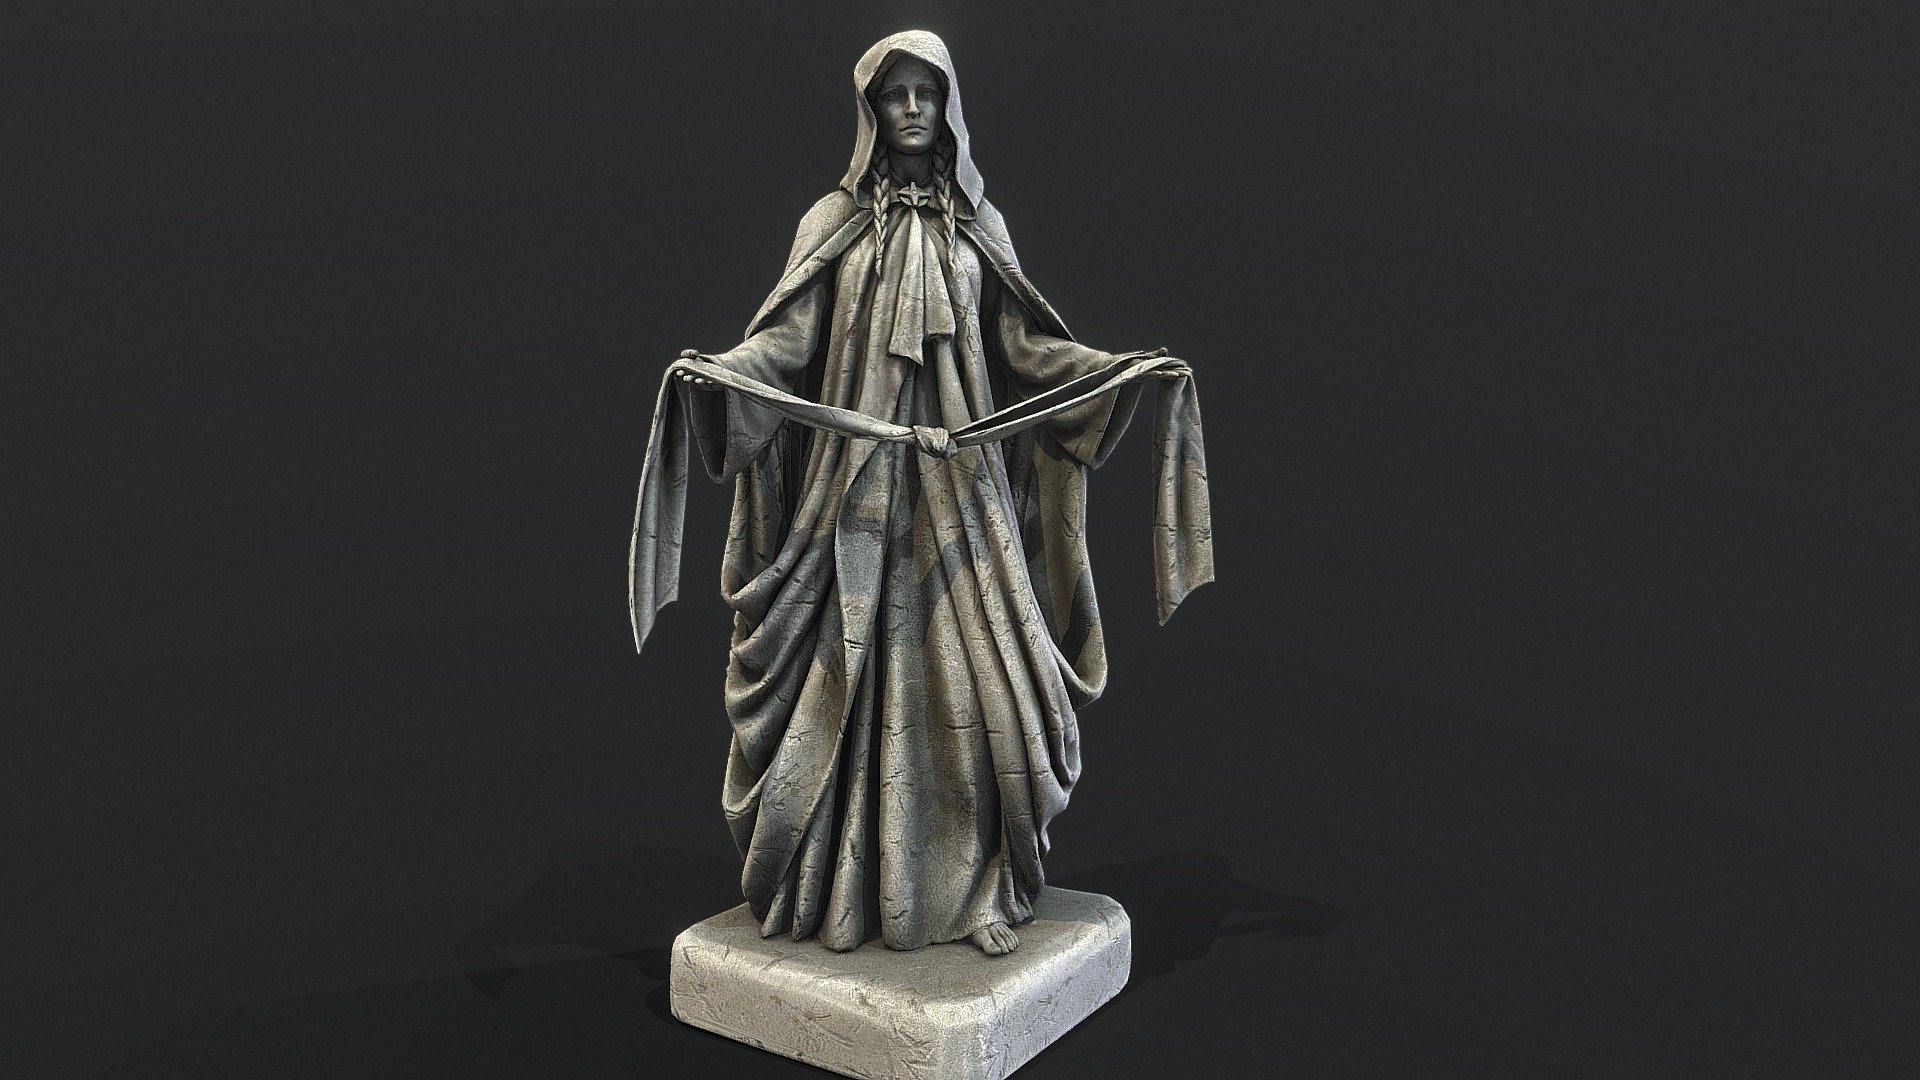 Mara Statue for Skyblivion - Mara Statue for Skyblivion - 3D model by Mandrake (@mandrake_3d) 3d model